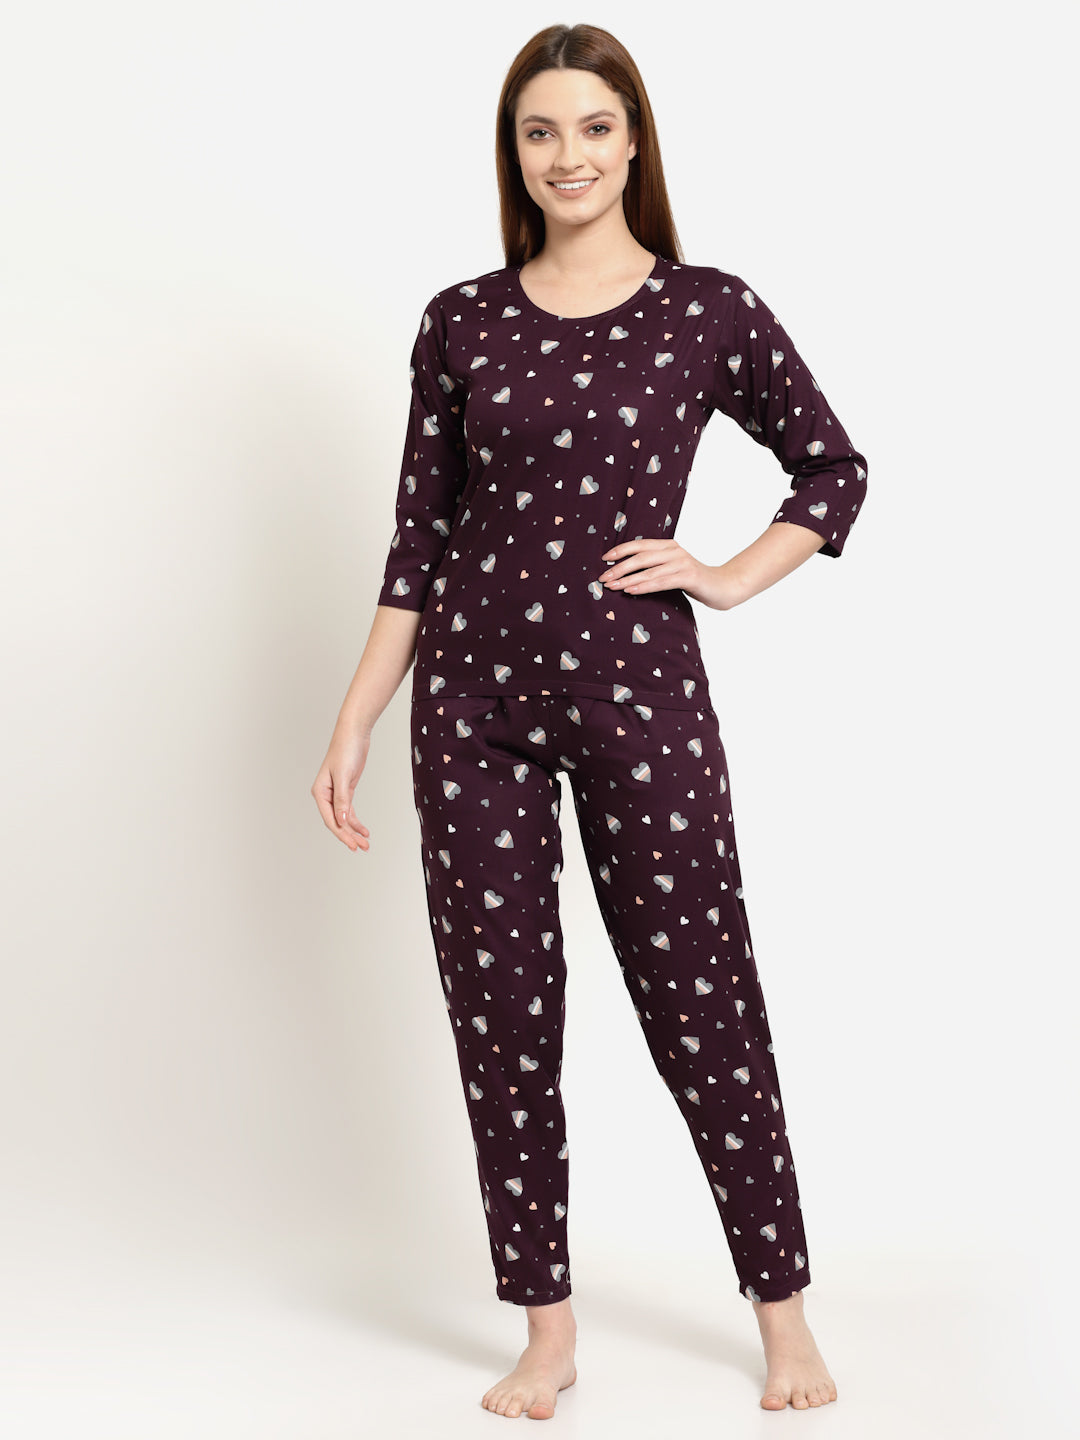 Uzarus Women's Cotton Printed Night Suit Set of Top & Pyjama